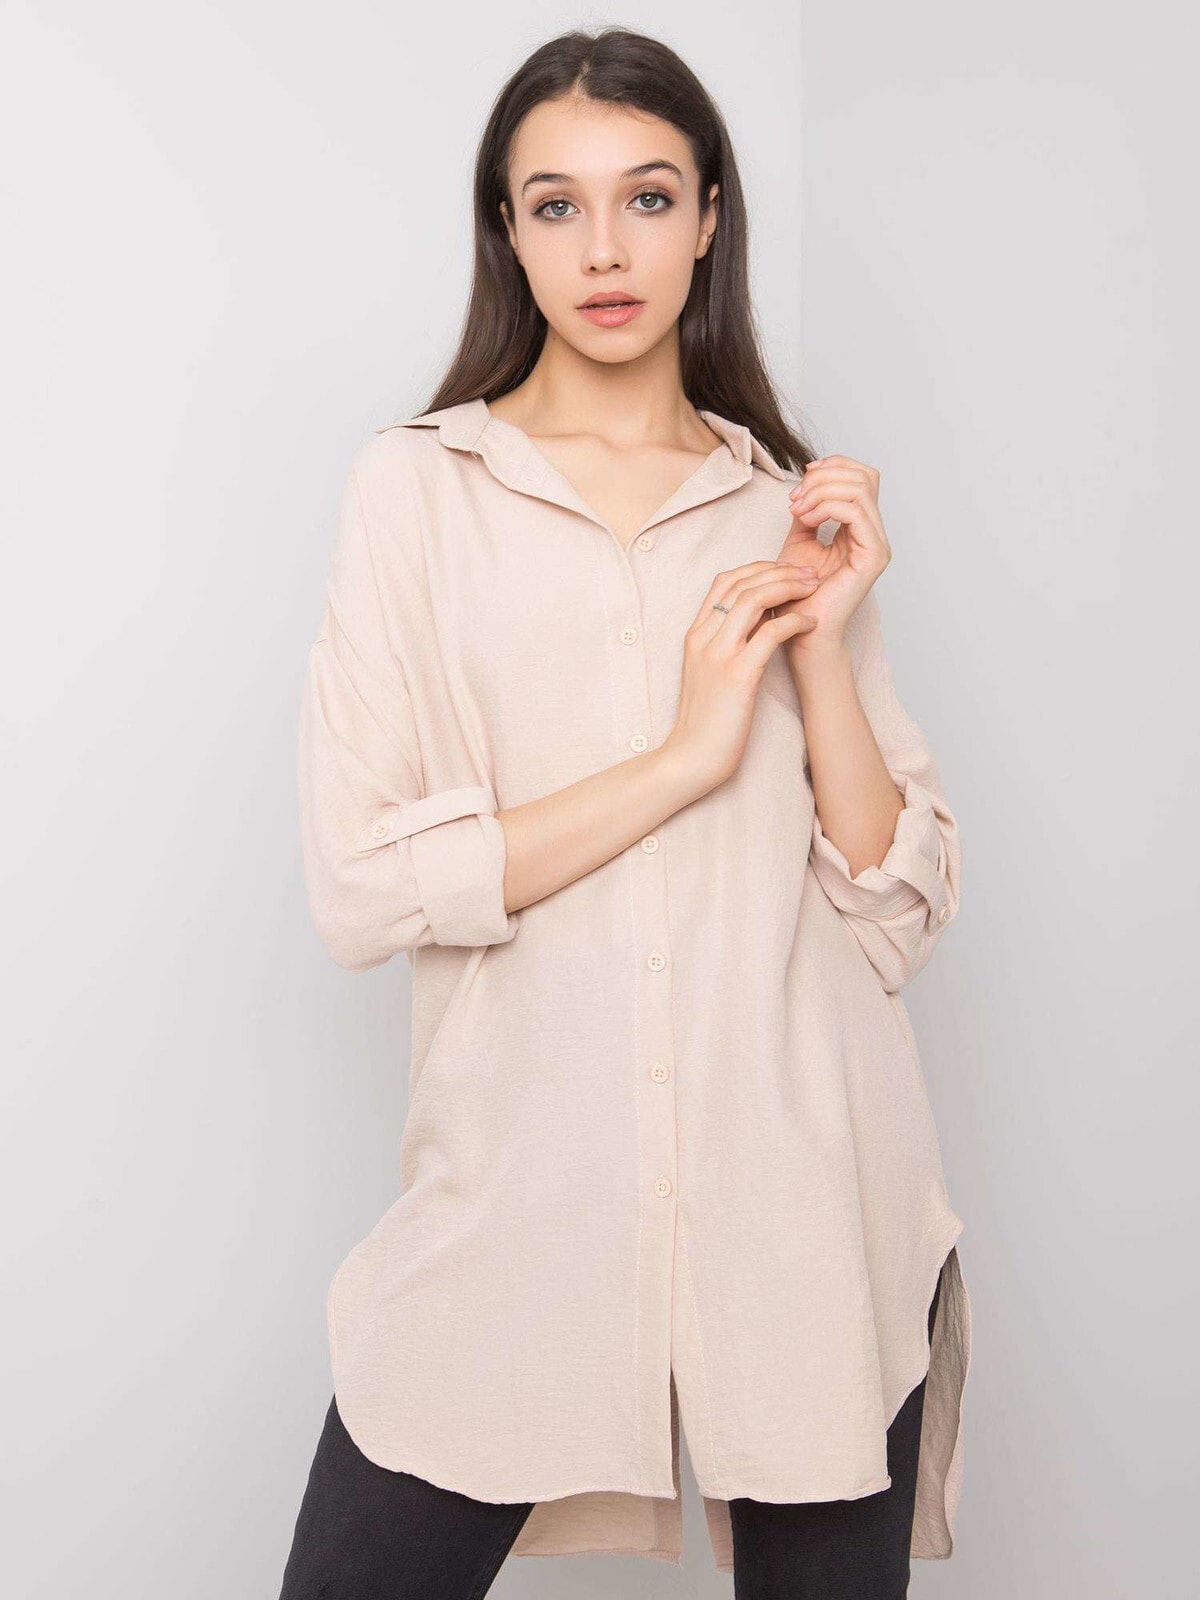 Женская удлиненная рубашка с рукавом 3/4 бежевая Factory Price